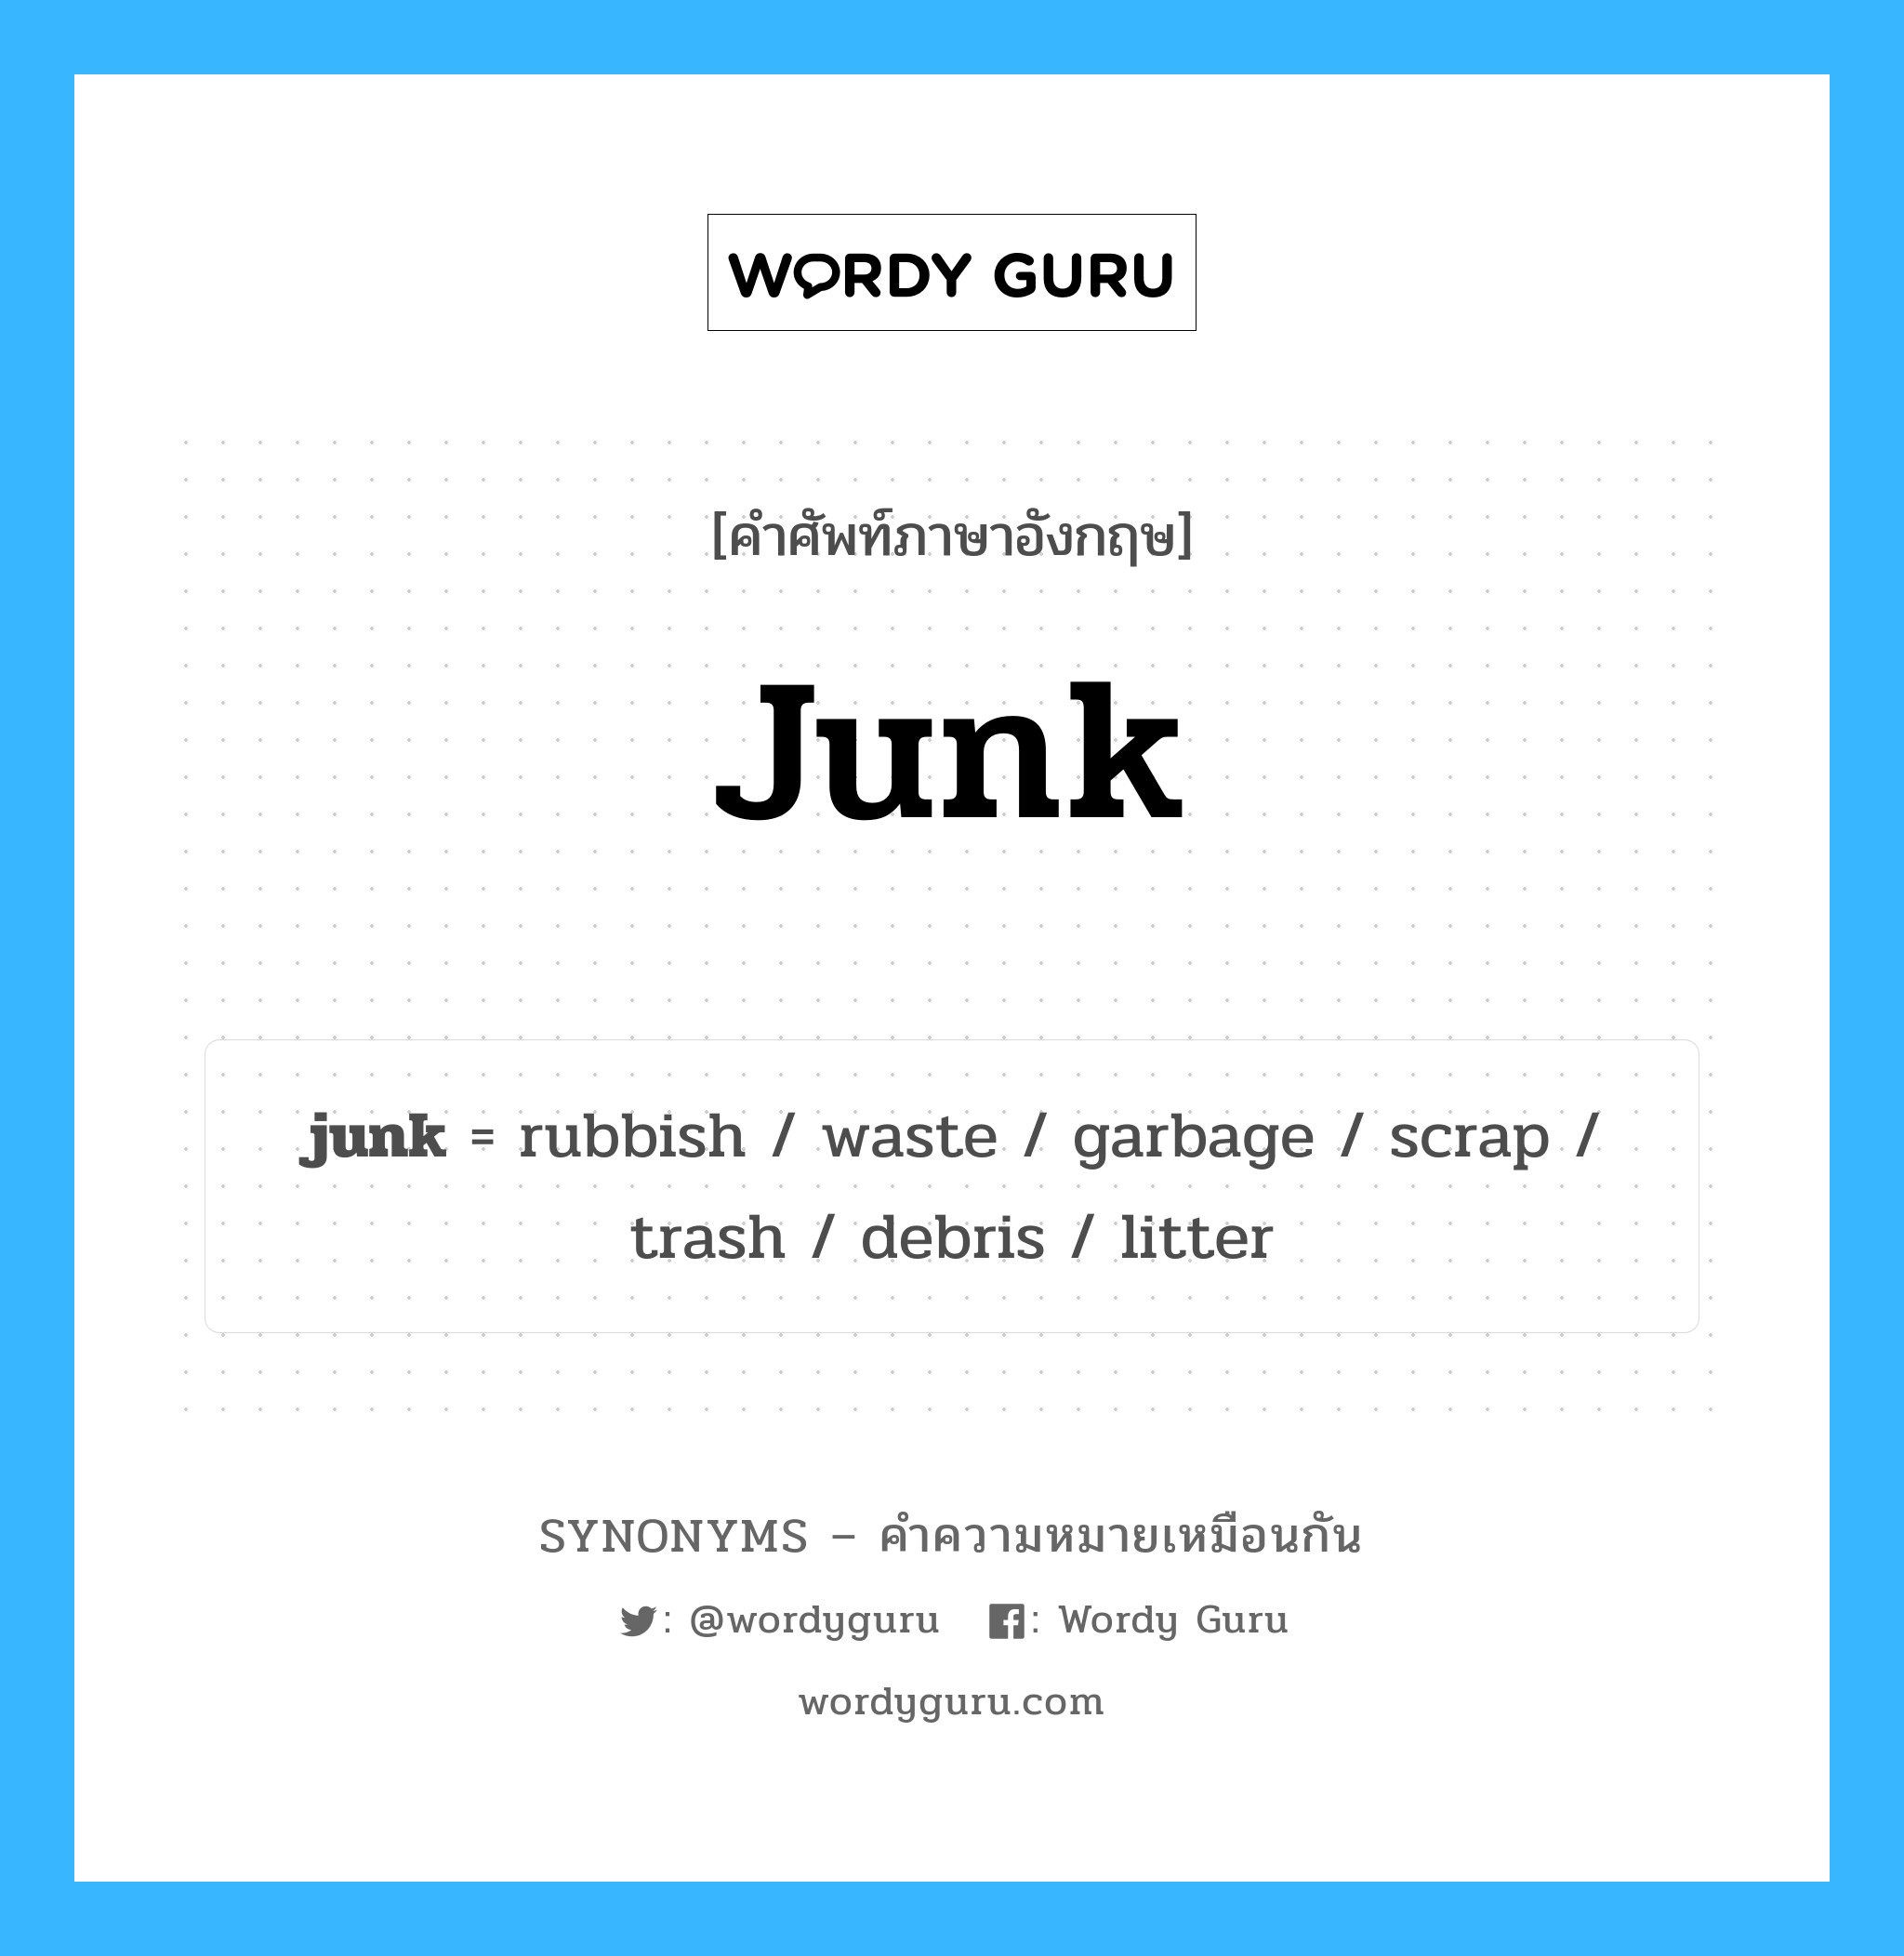 junk เป็นหนึ่งใน garbage และมีคำอื่น ๆ อีกดังนี้, คำศัพท์ภาษาอังกฤษ junk ความหมายคล้ายกันกับ garbage แปลว่า ขยะ หมวด garbage